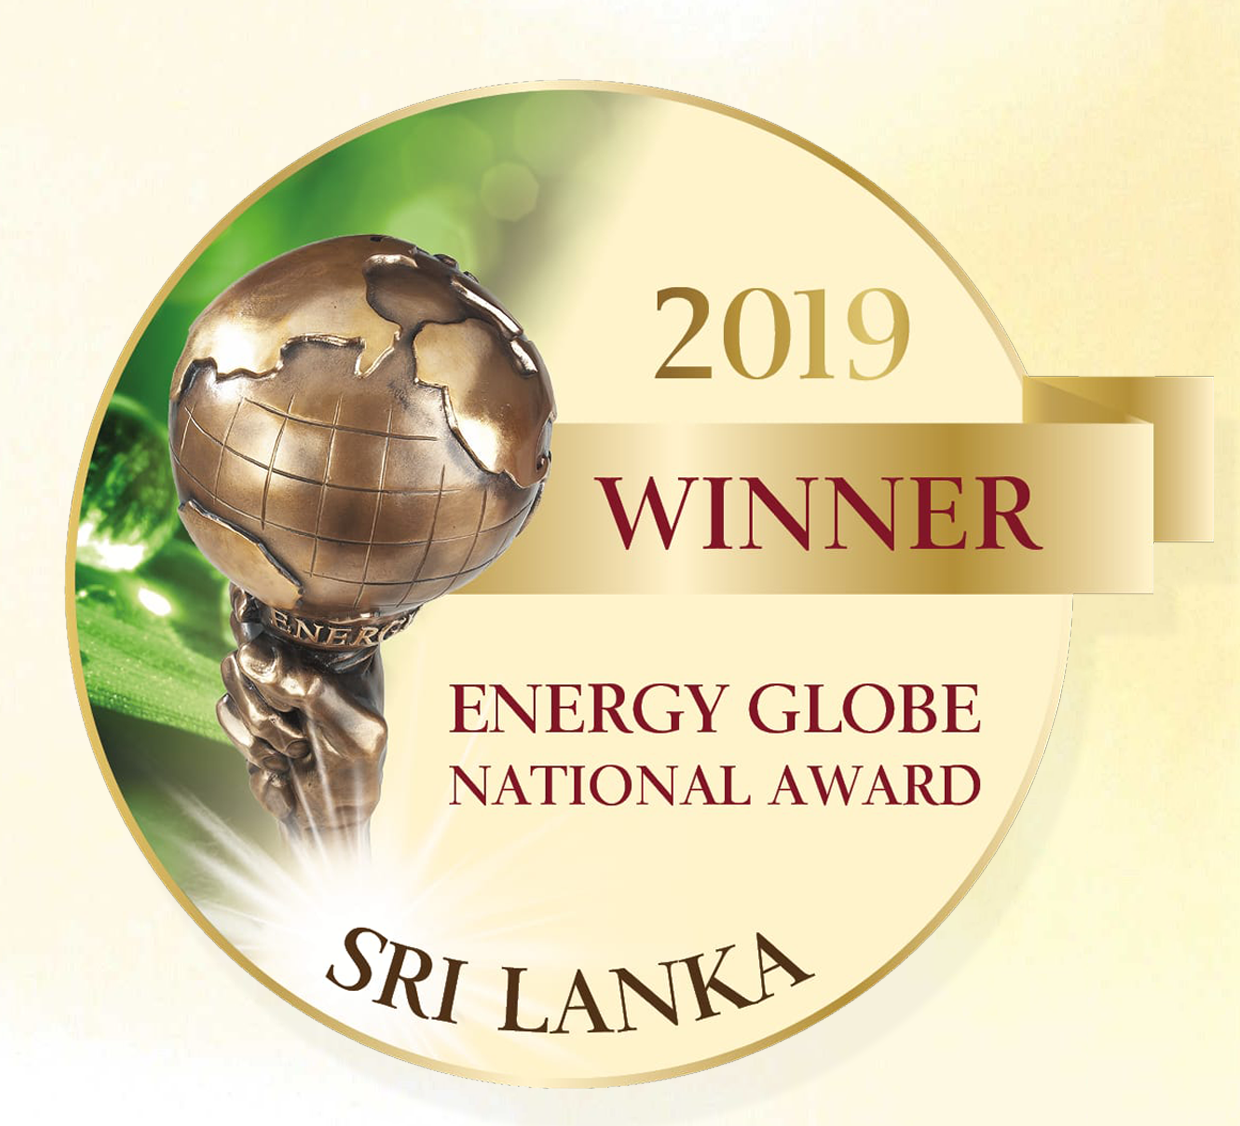 2019 Winner - Energy Globe Award National Award for Sri Lanka